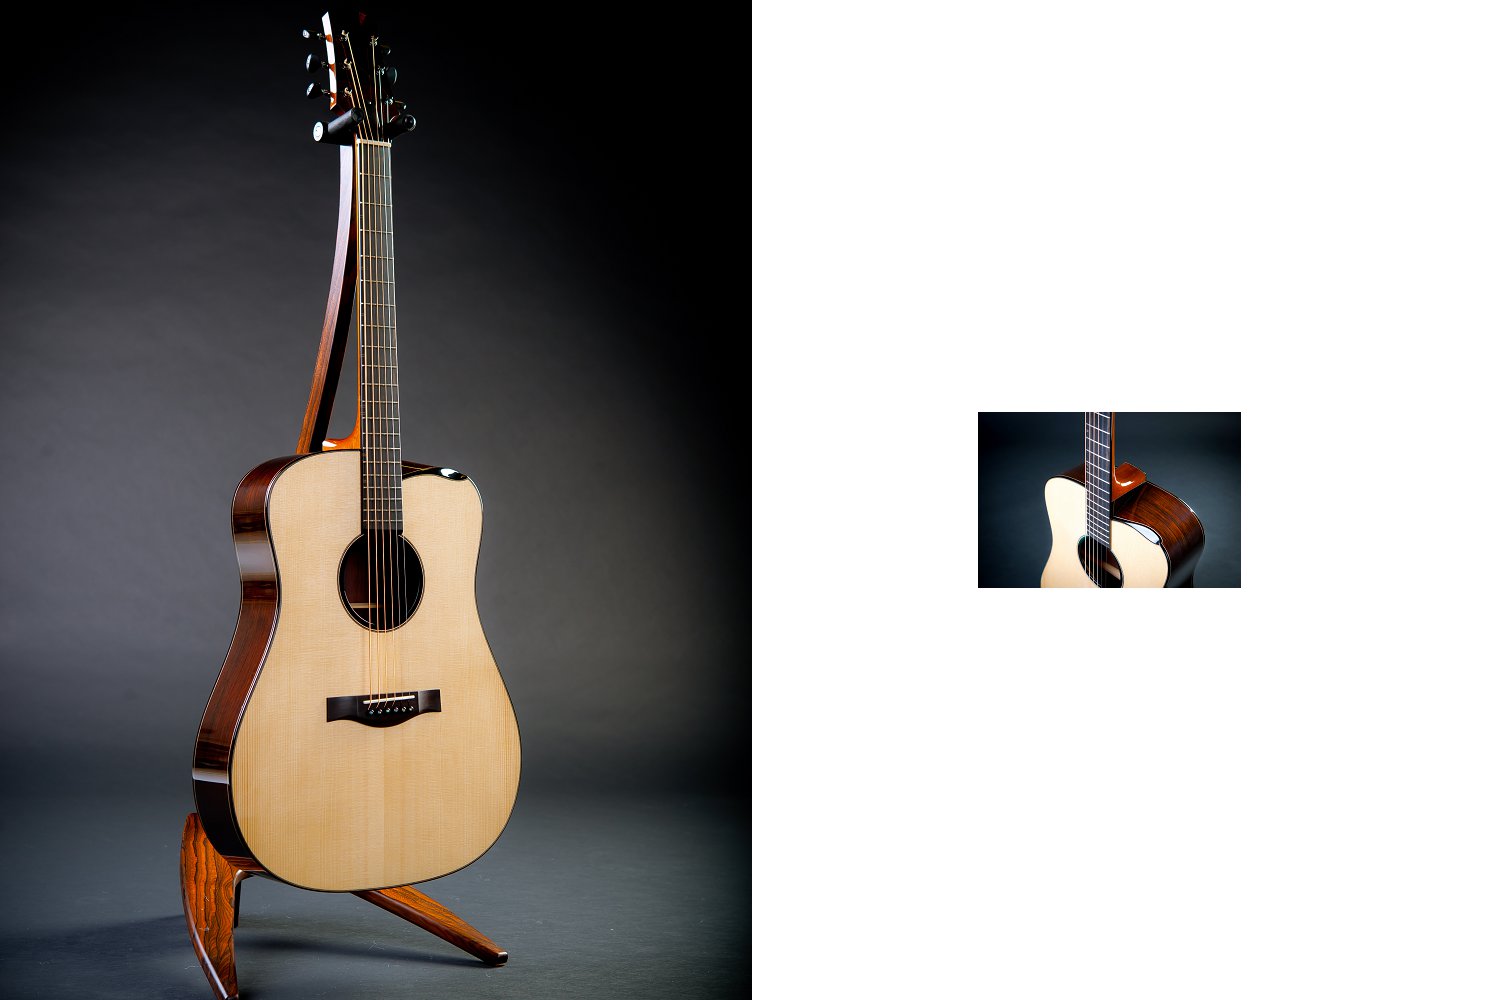 Garten SchÃ¶n Best Of Guitar [hand Made] ëª©ë¡ë³´ê¸° ì ëª© Guitar [hand Made